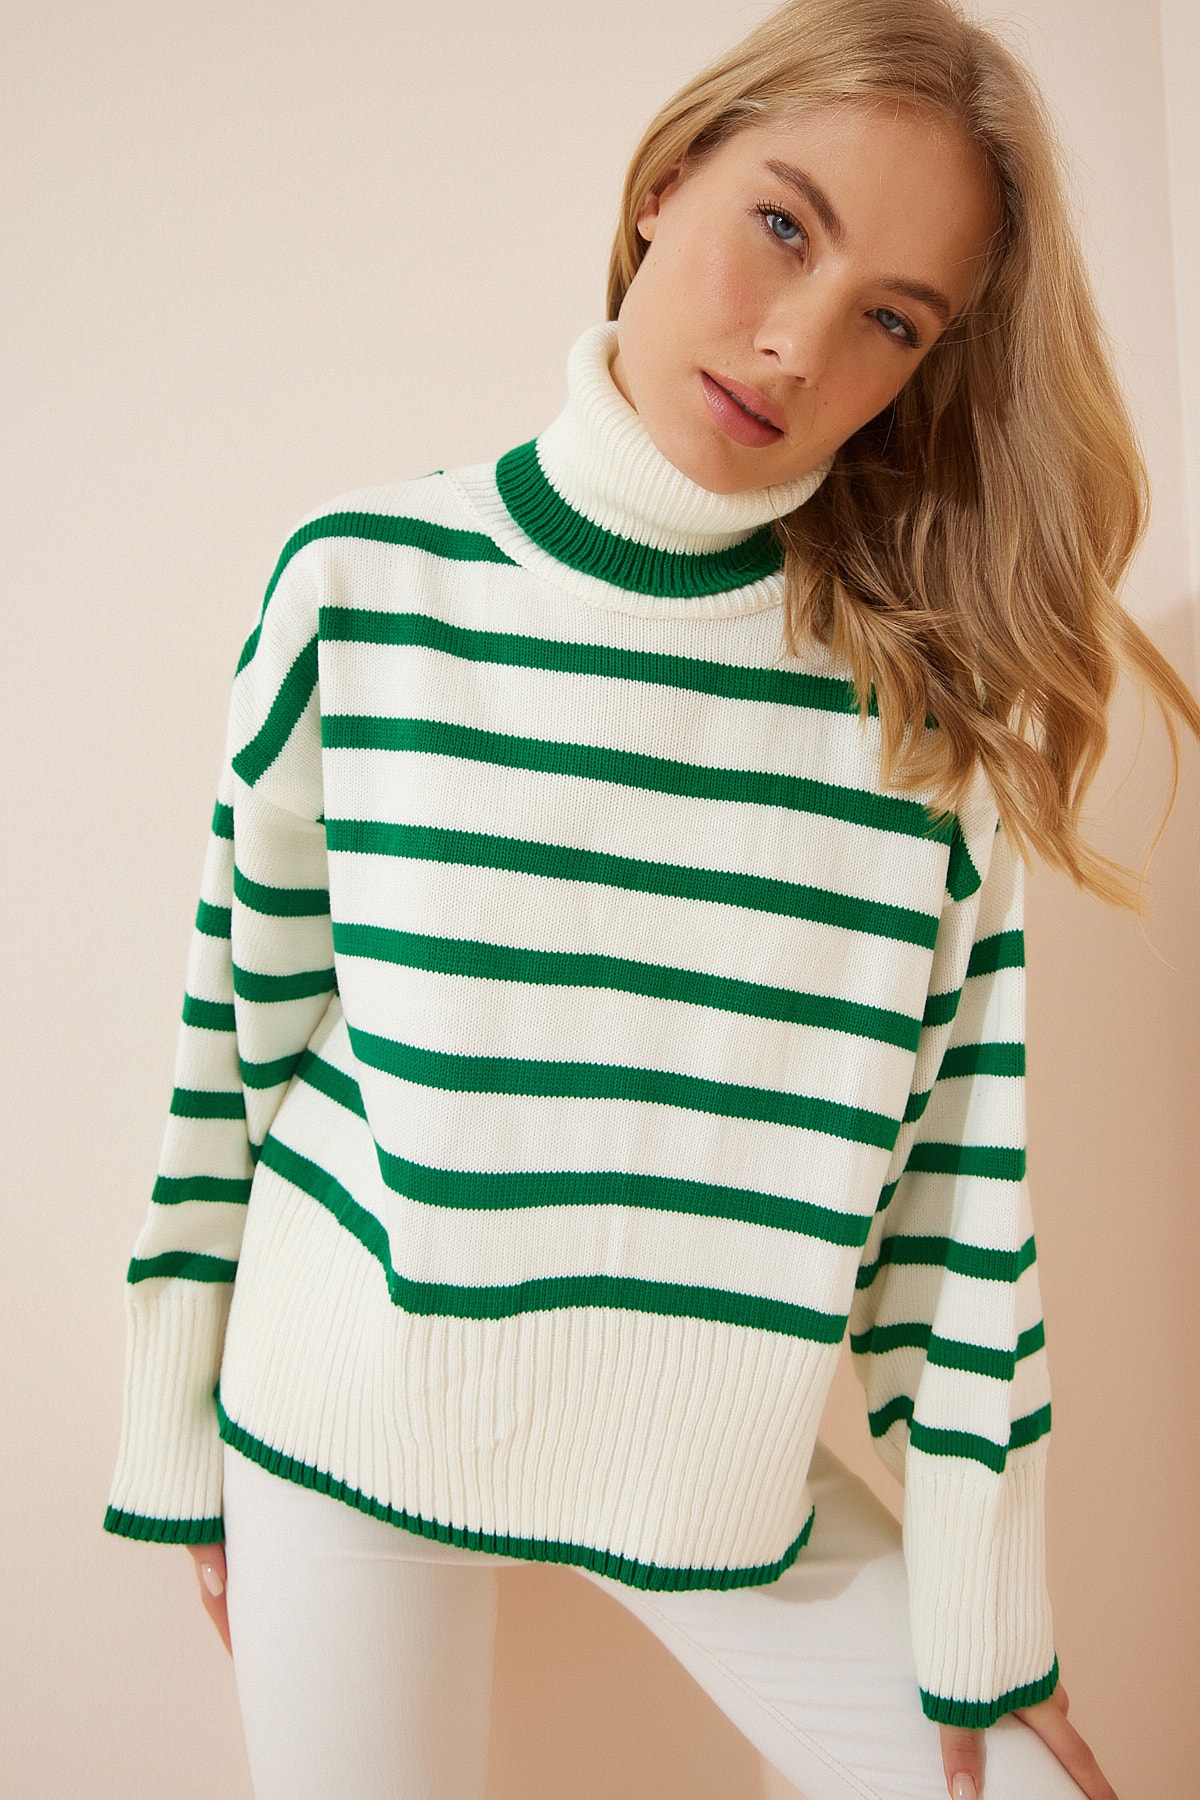 Levně Happiness İstanbul Women's Bone Green Striped Turtleneck Oversize Knitwear Sweater